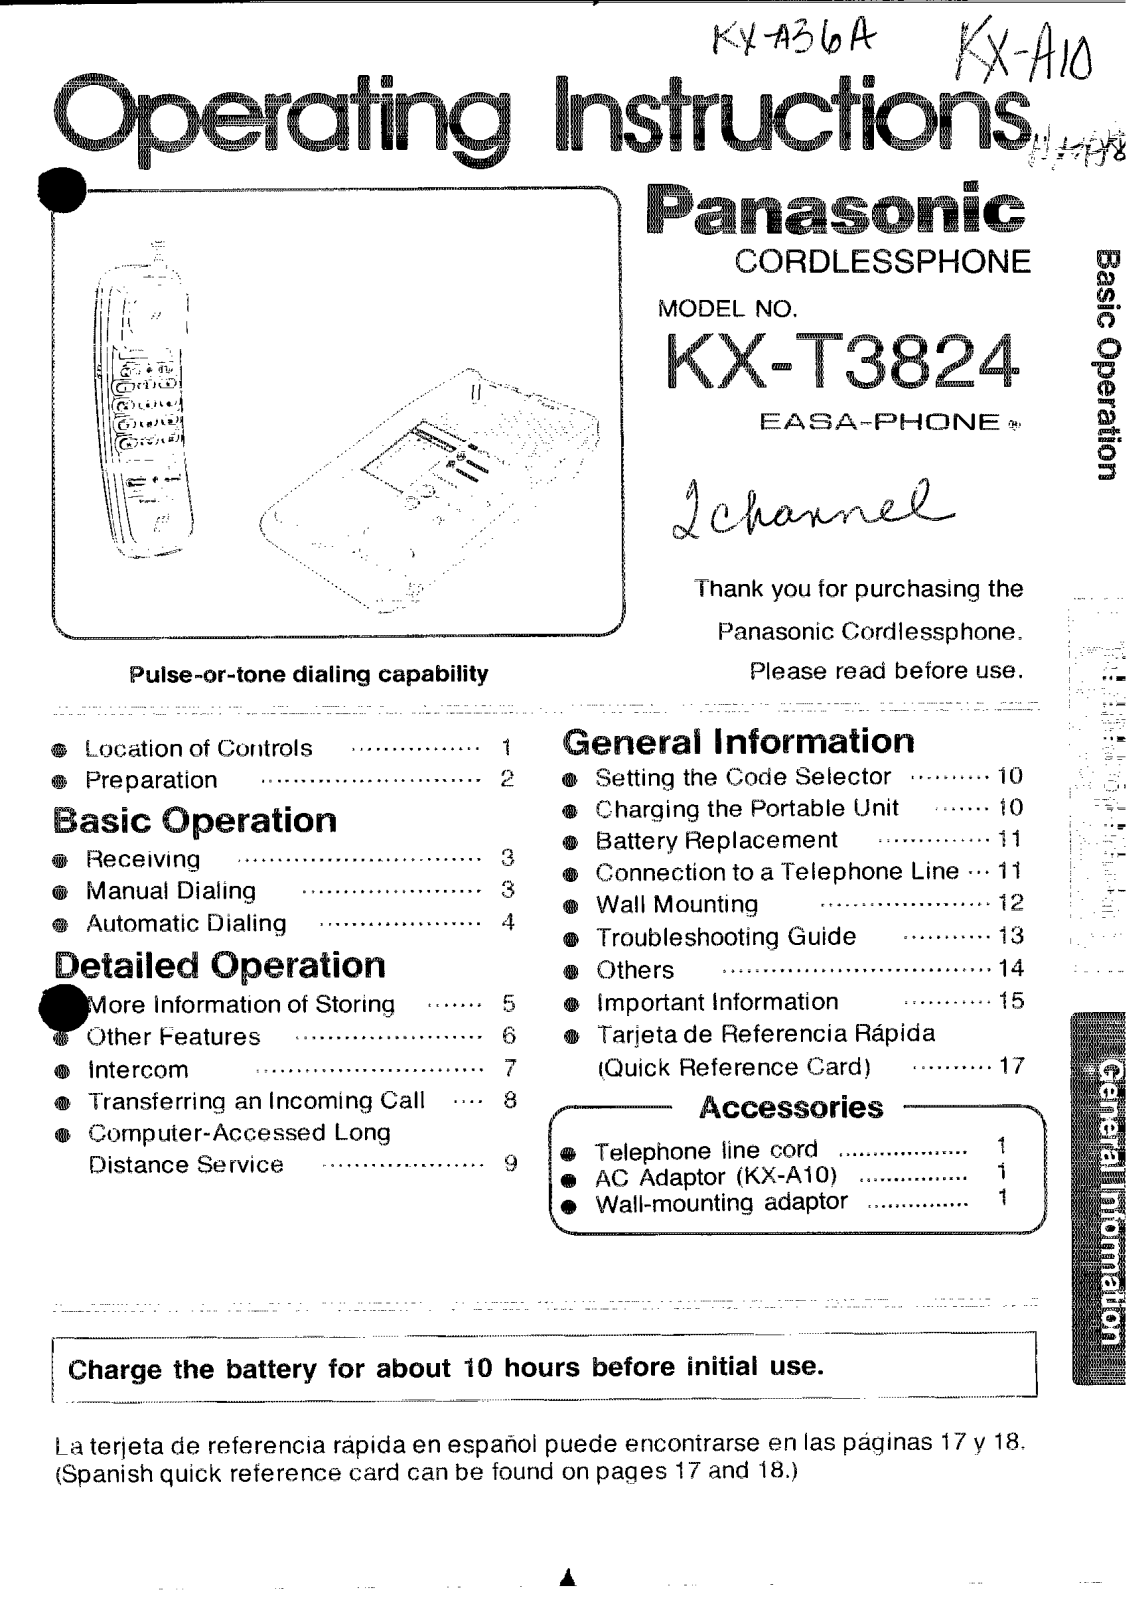 Panasonic kx-t3824 Operation Manual